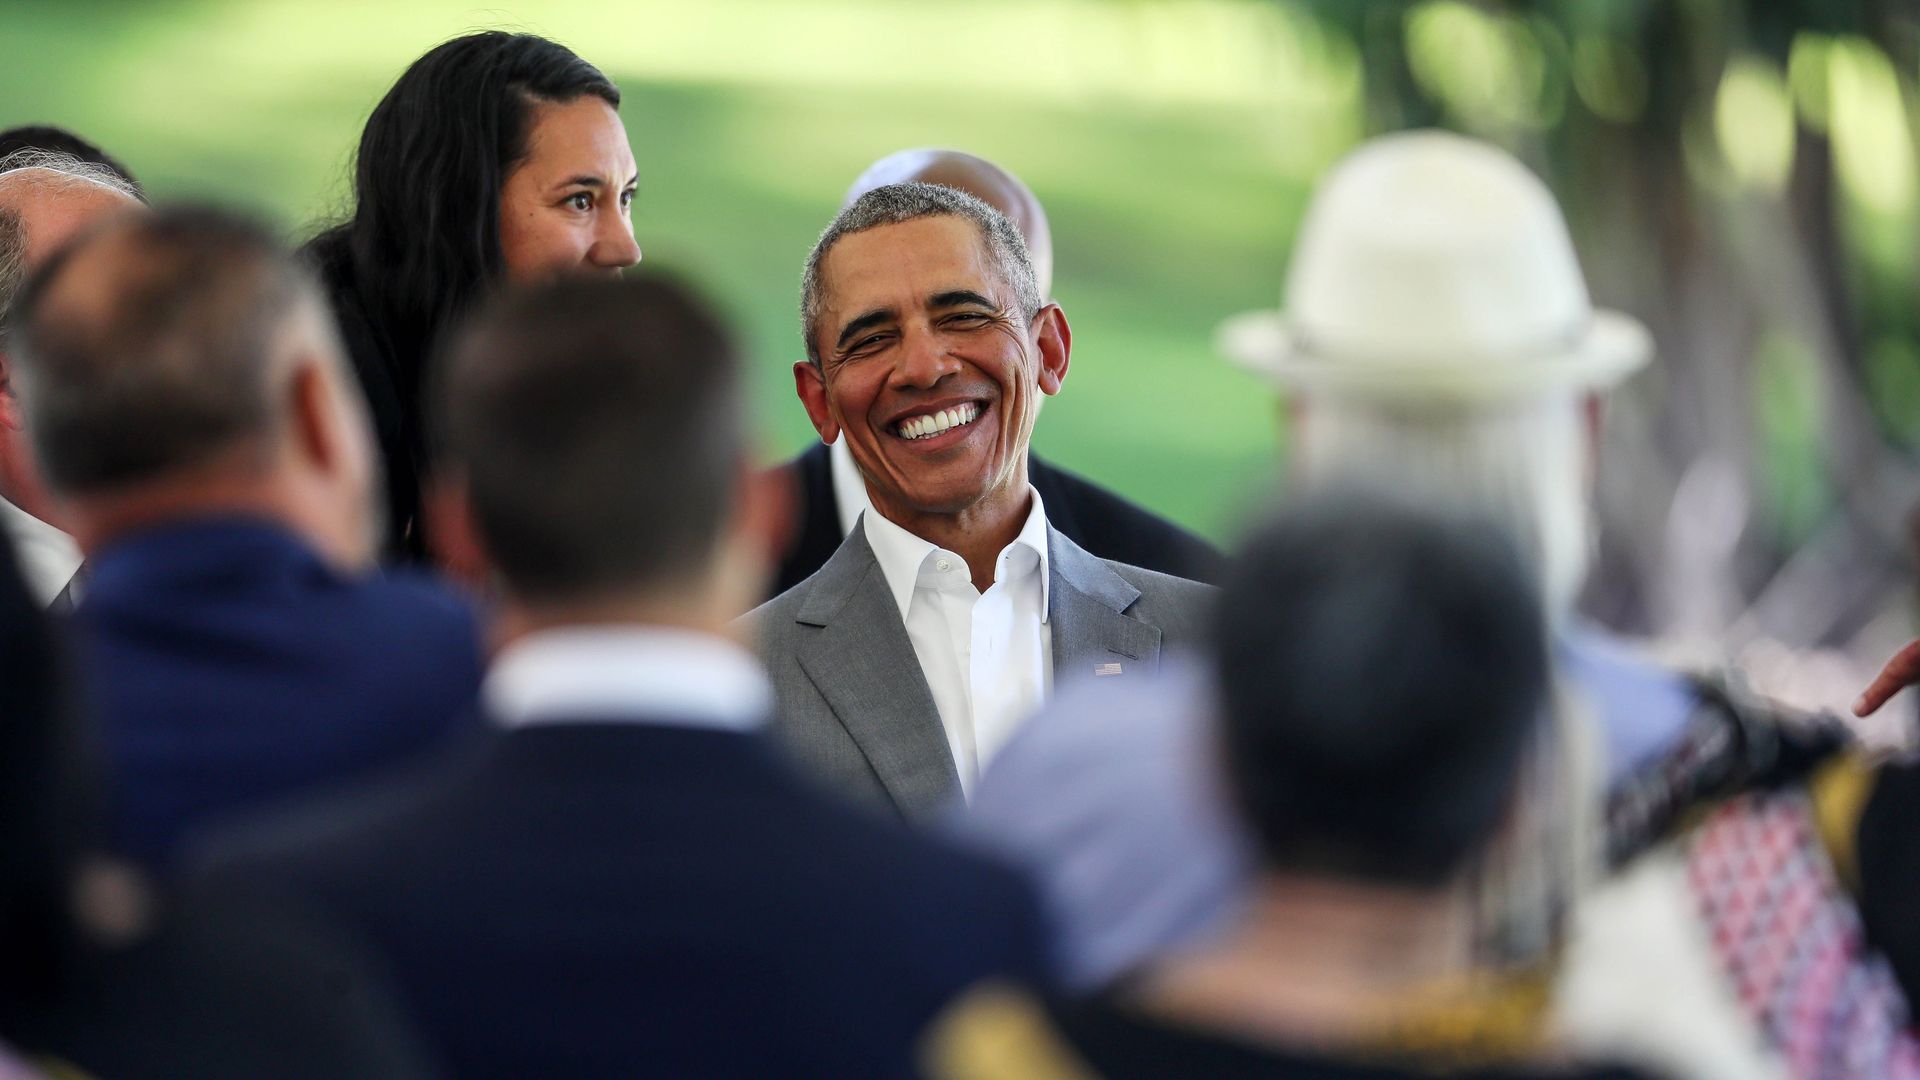 Former president Barack Obama smiling in a crowd.